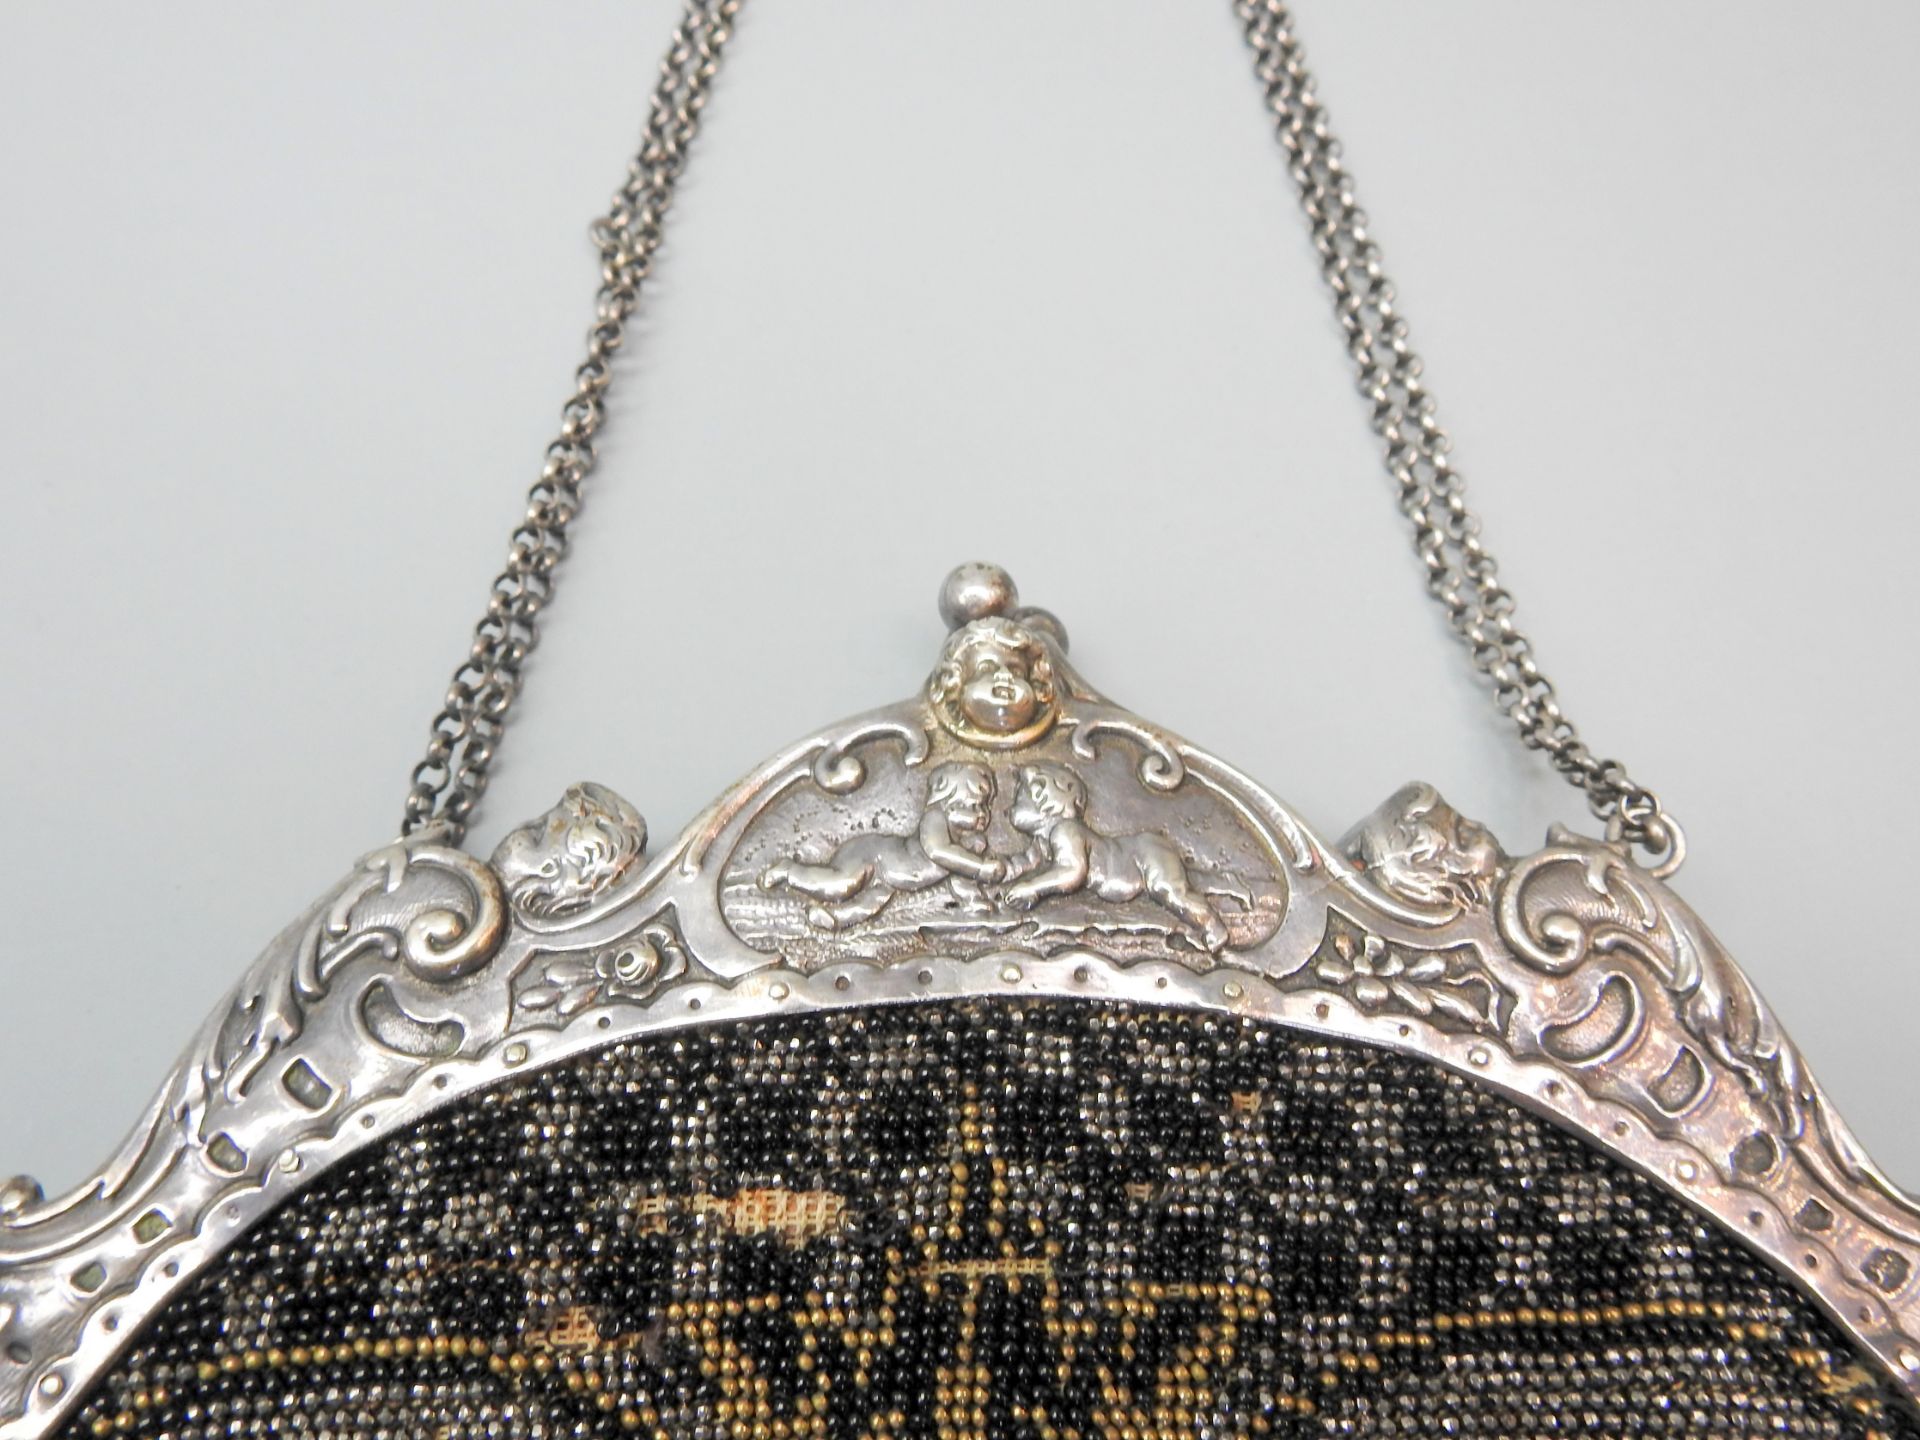 Perlenbestickte DamenhandtaschePerlenbestickte Damenhandtasche Silber - Bild 2 aus 5